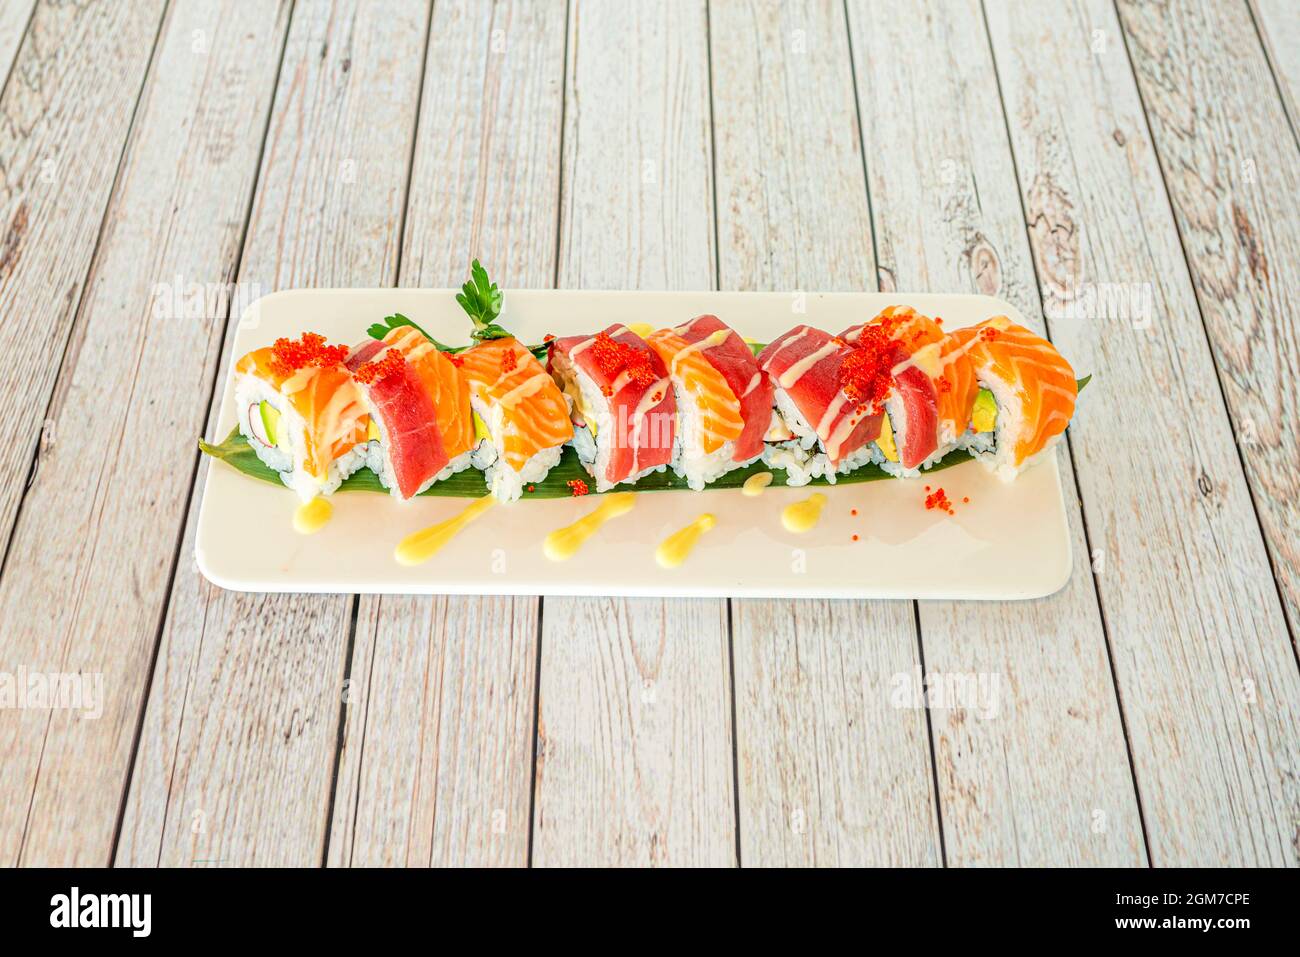 Roul de sushi uramaki mélangé avec du thon rouge et du saumon norvégien, recettes avocat, surimi, macago roe et algues nori Banque D'Images